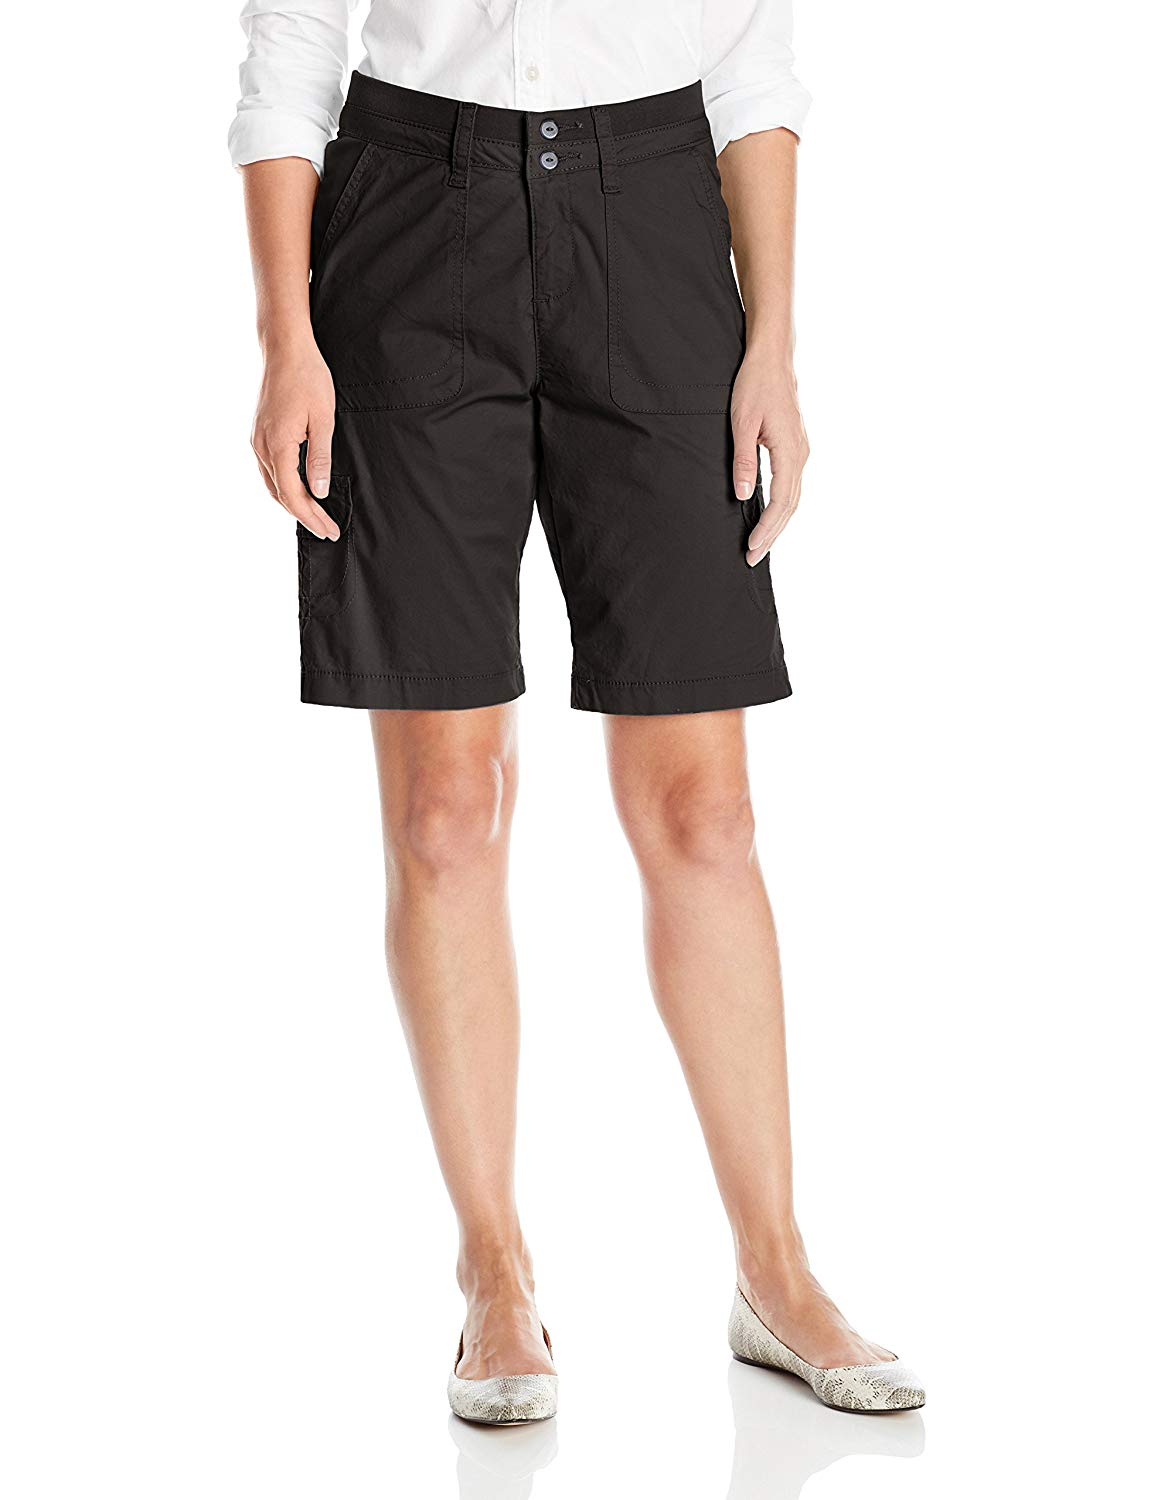 Lee Women's Relaxed Fit Avey Knit Waist Cargo Bermuda Short,, Black, Size  12.0 8 | eBay